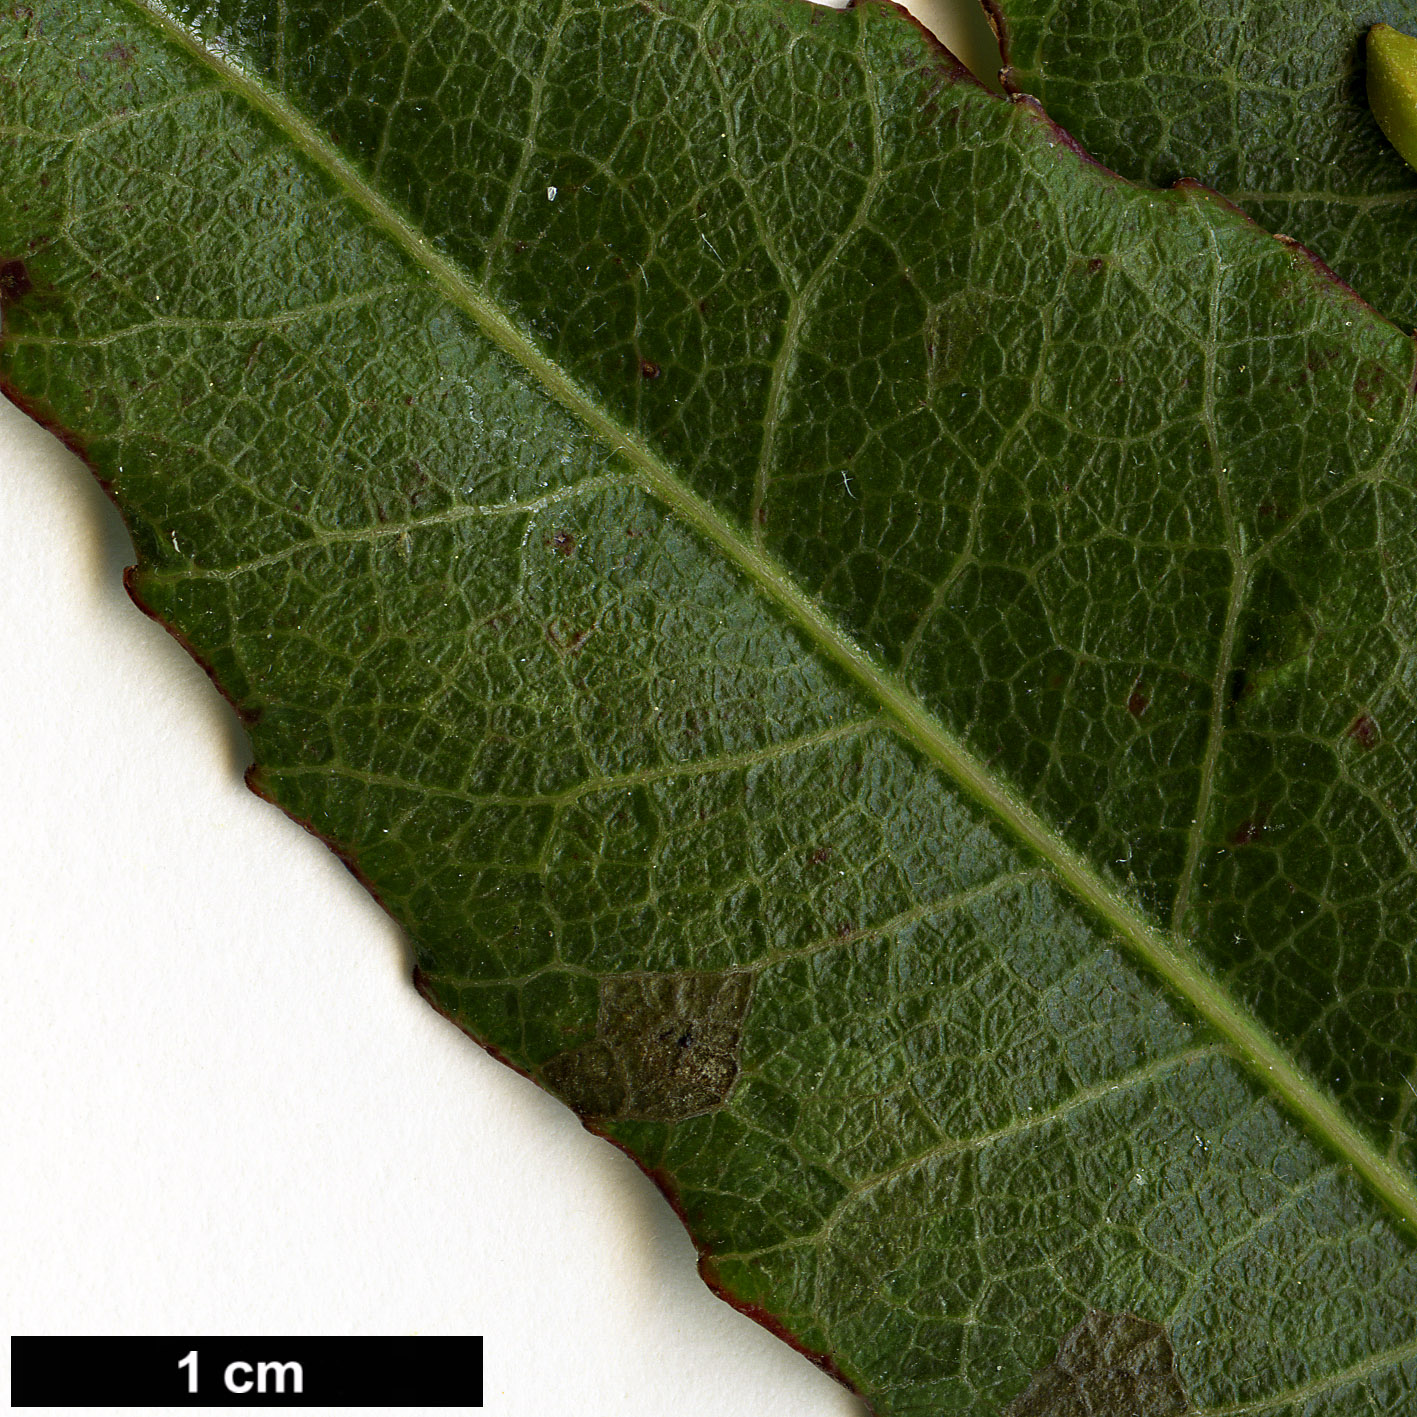 High resolution image: Family: Elaeocarpaceae - Genus: Elaeocarpus - Taxon: reticulatus